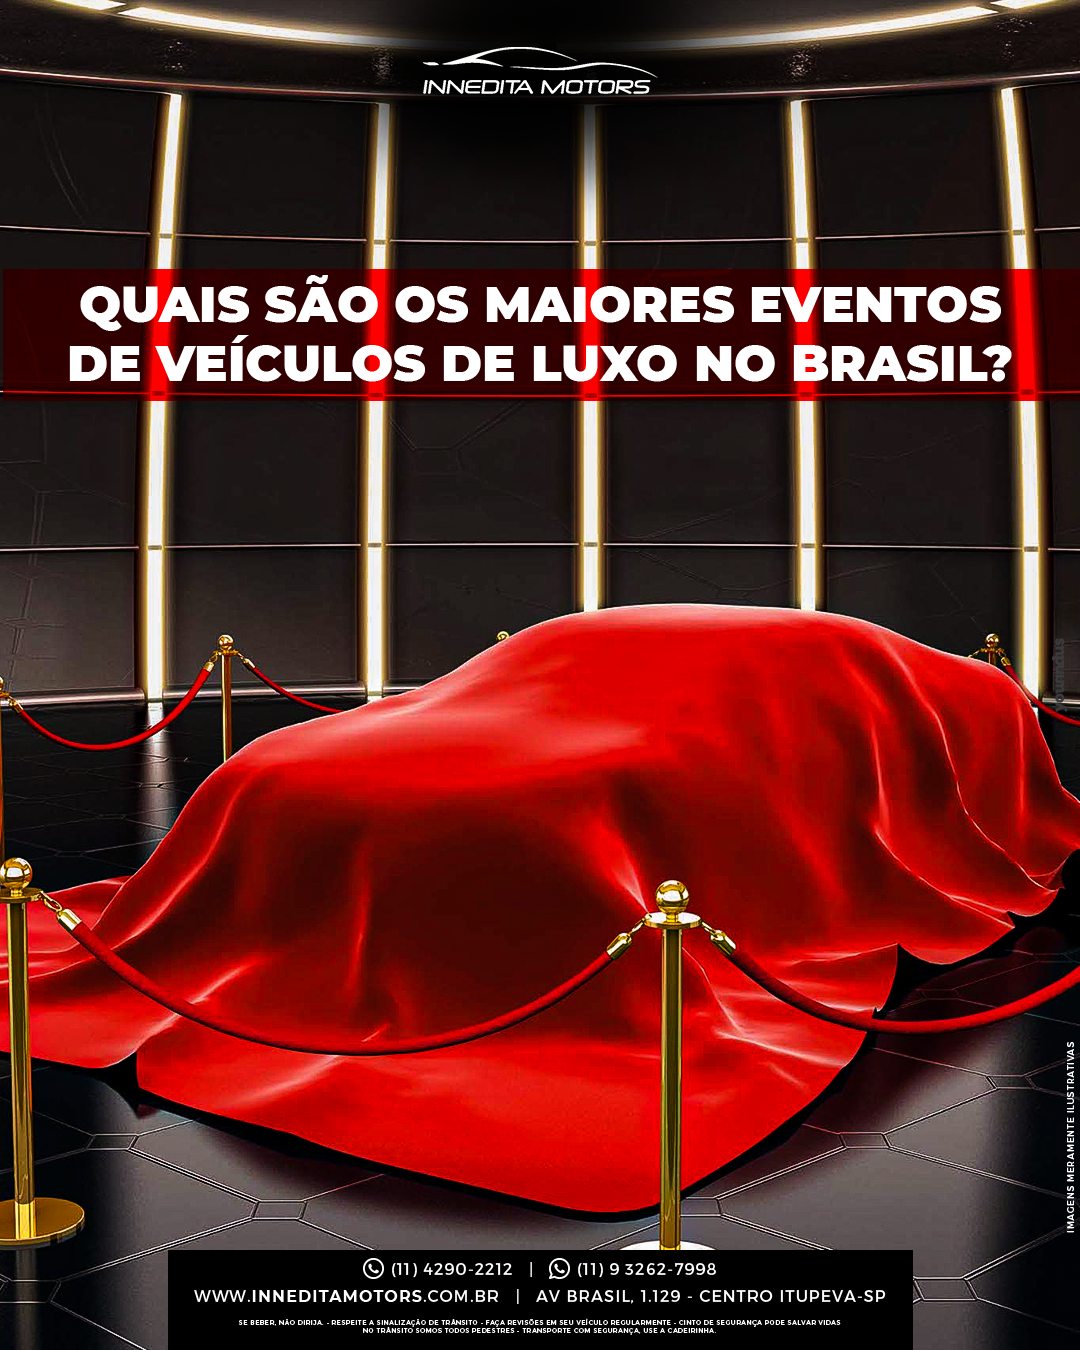 Evento de veículos de Luxo no Brasil: quais são os maiores ?